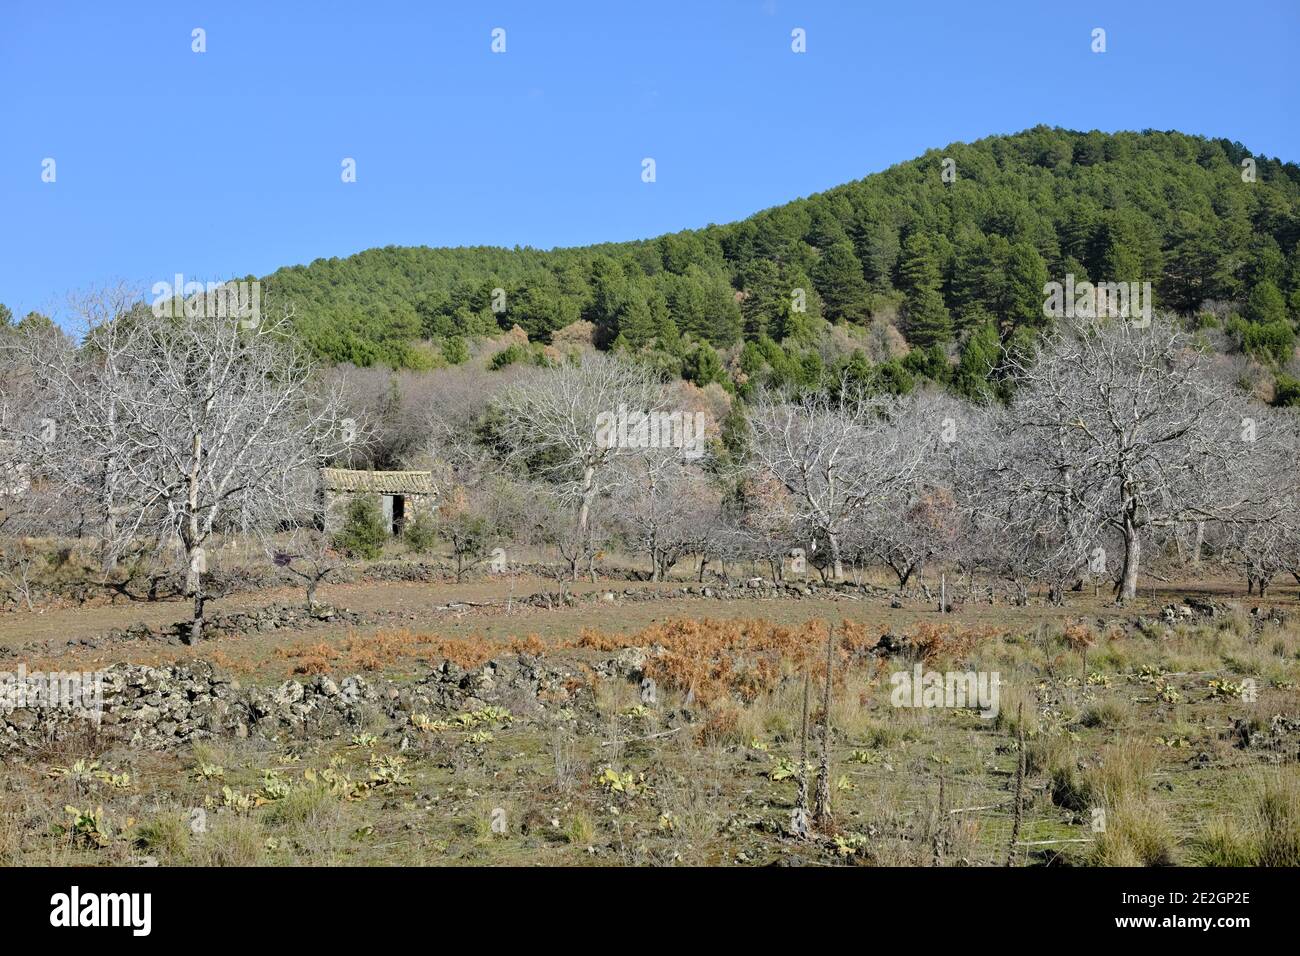 Paese scena di montagna Sicilia con casa rurale abbandonata in Foresta mista del Parco dell'Etna Foto Stock